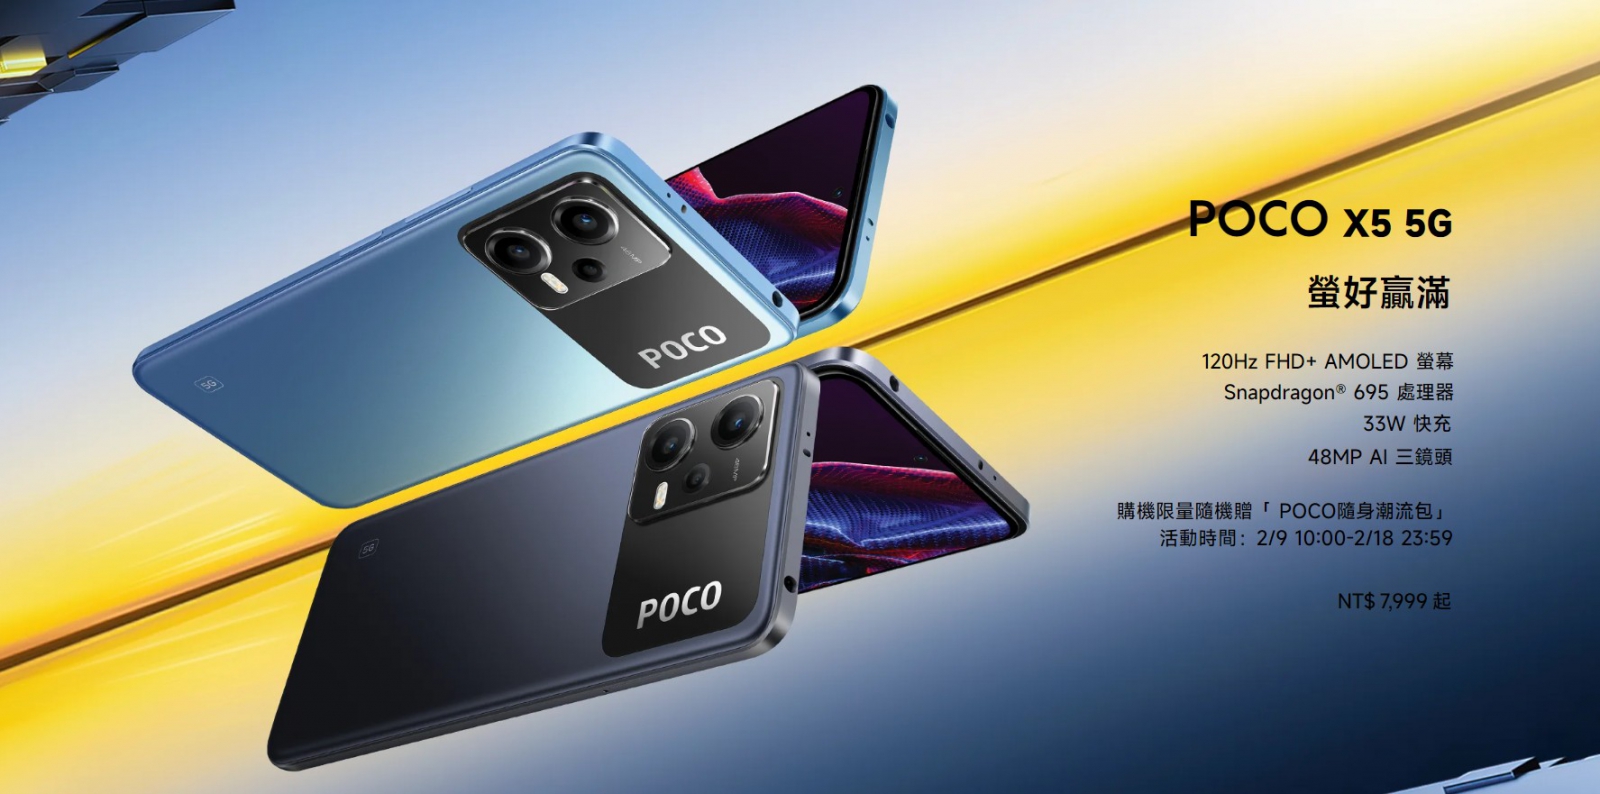 【機型介紹】POCO X5 5G中階平價手機 售價/規格亮點/評價一次看！